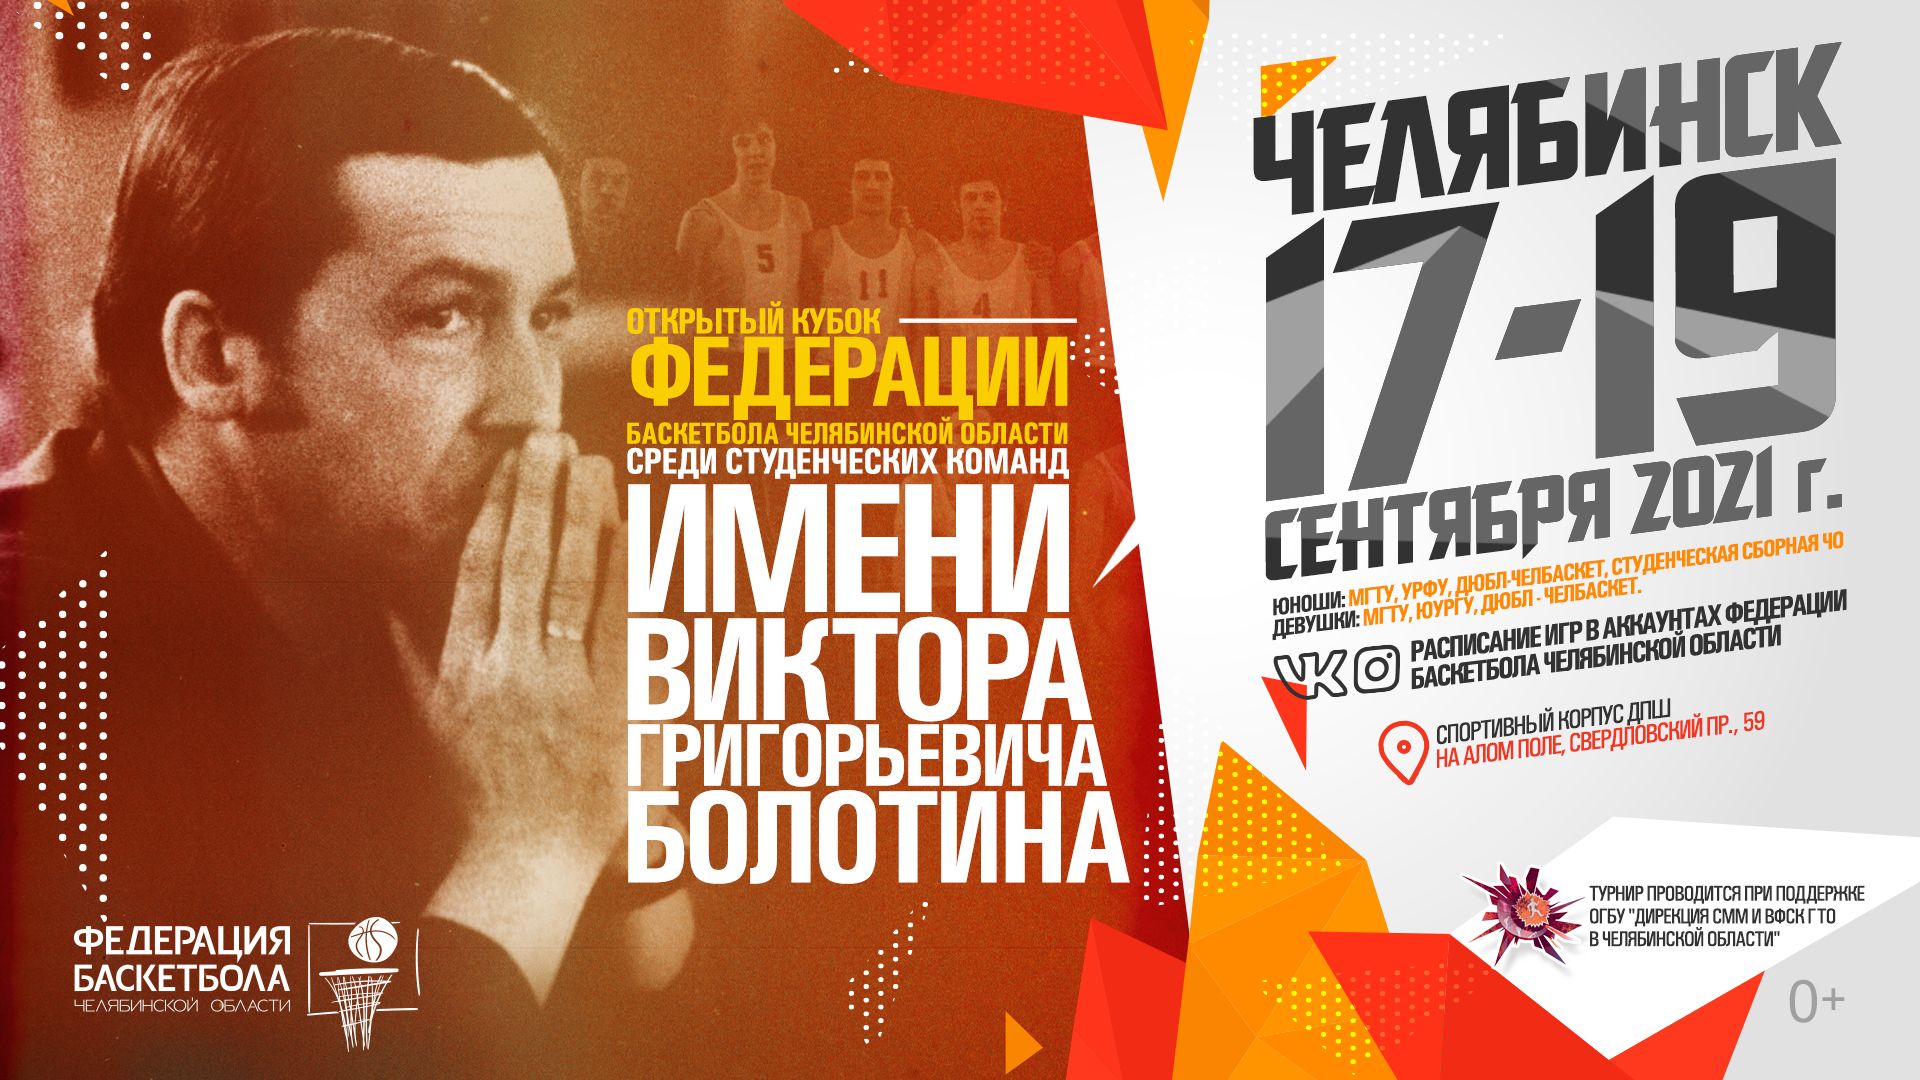 В Челябинске состоится студенческий кубок по баскетболу имени Виктора Болотина